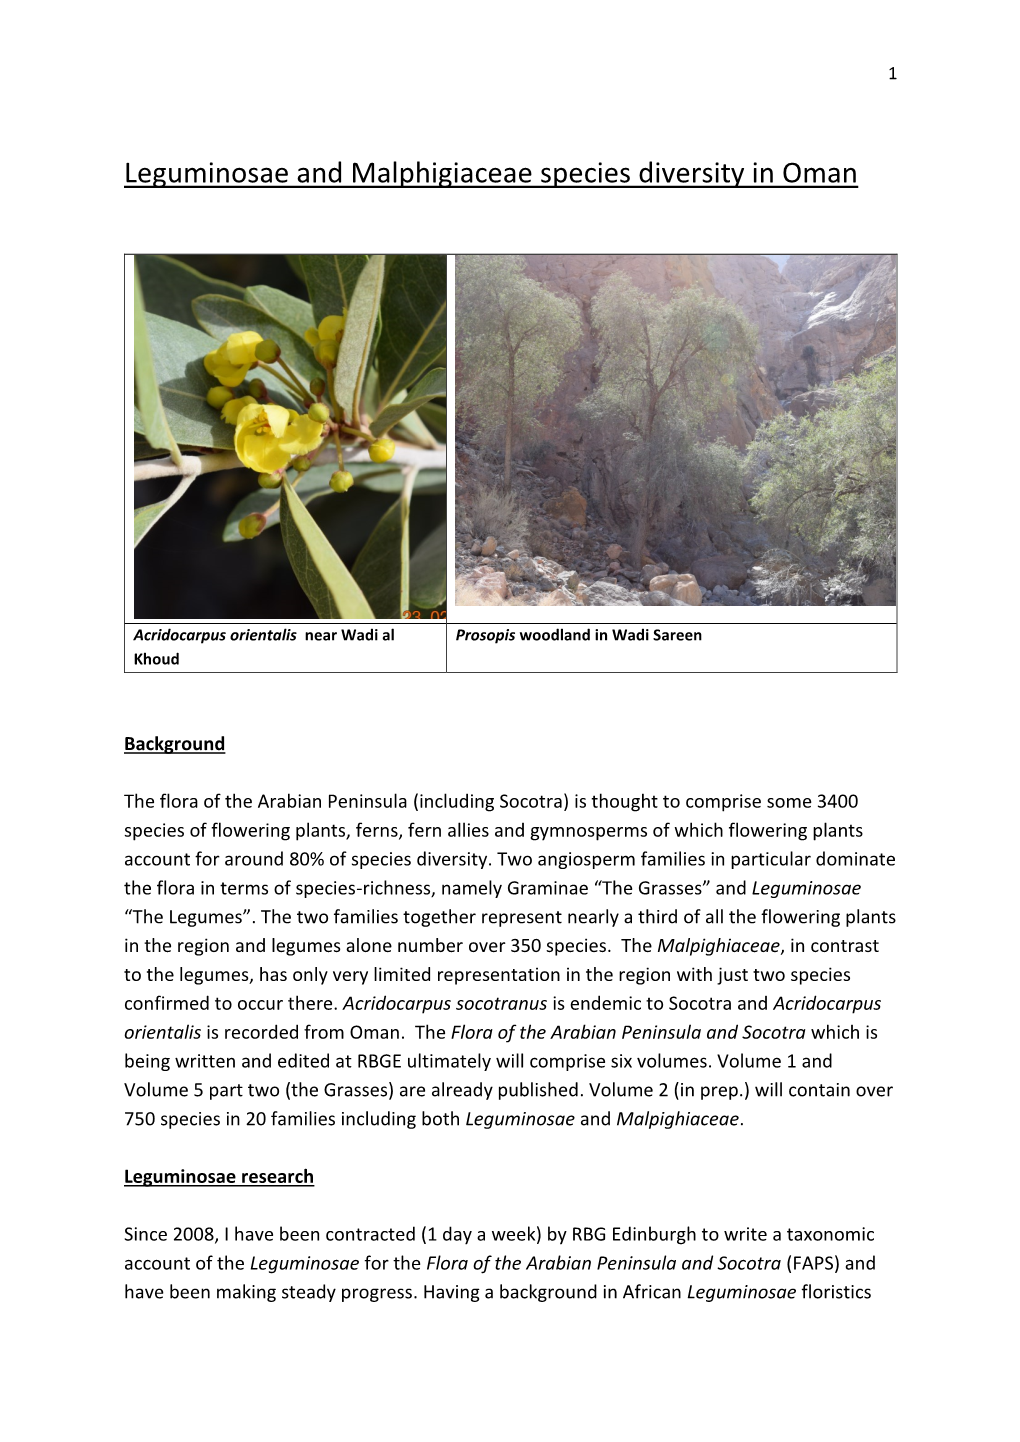 Leguminosae and Malphigiaceae Species Diversity in Oman